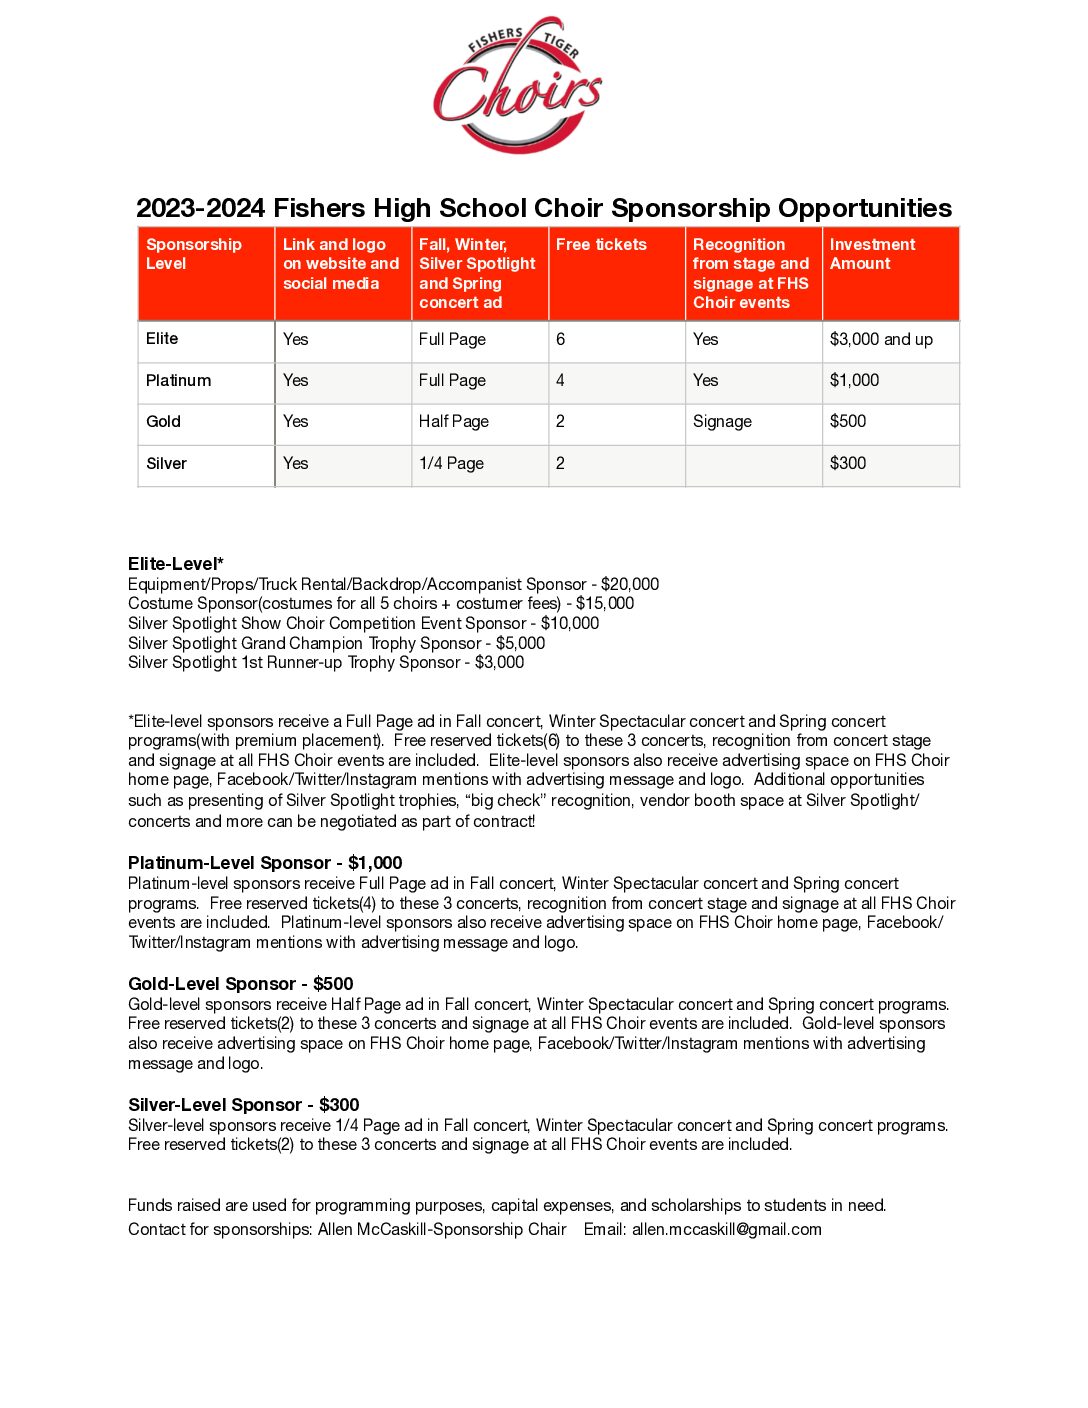 2023-24 FHS Choir Sponsorship LevelsDOC